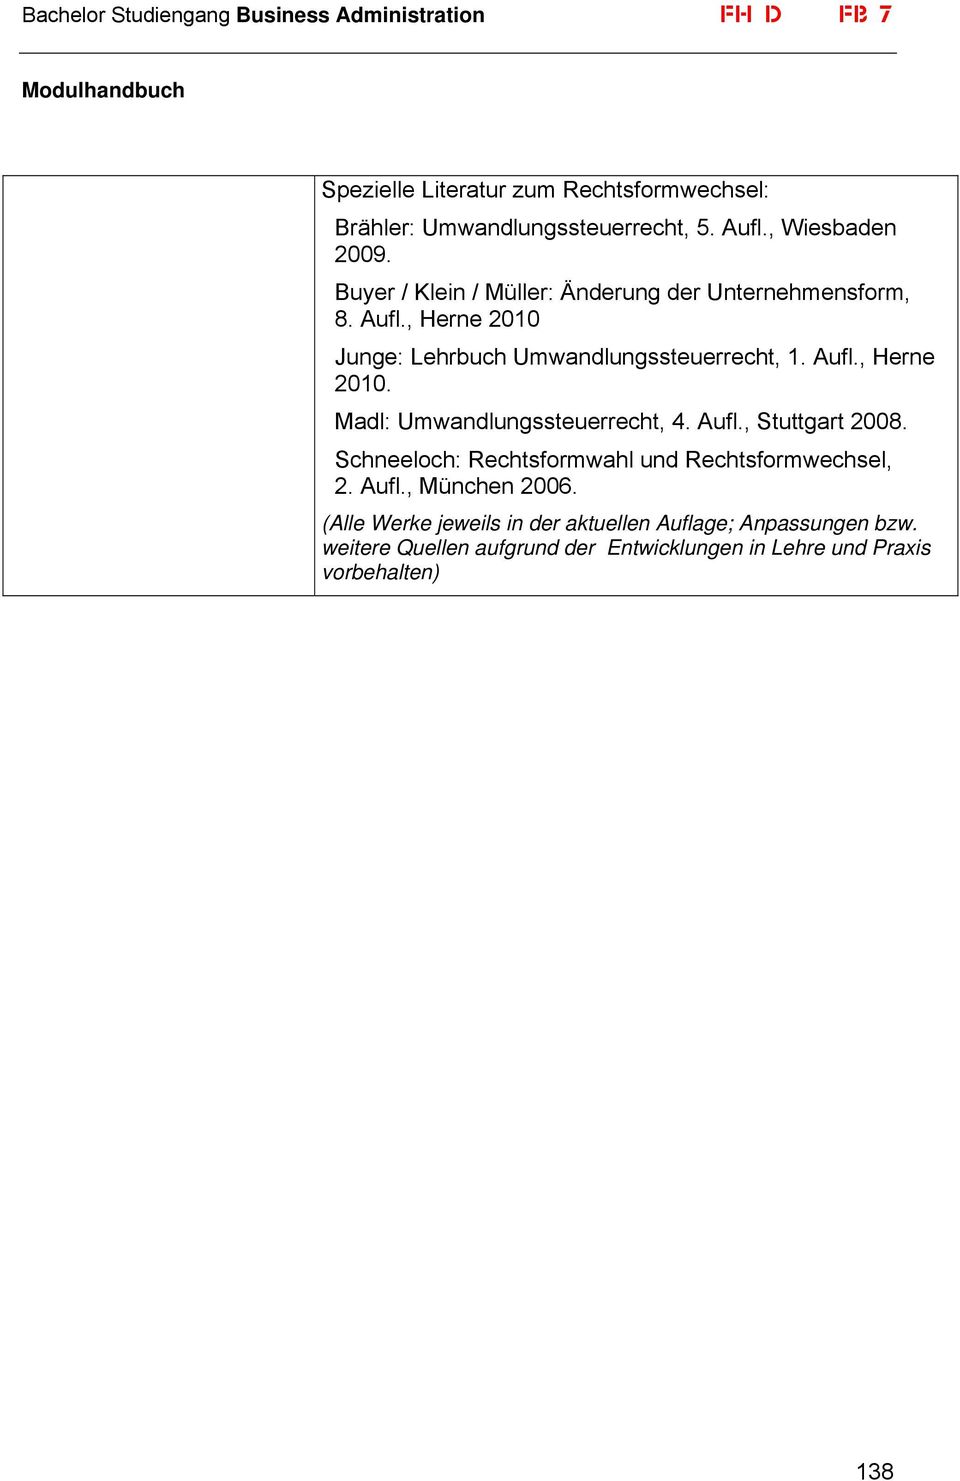 Aufl., Stuttgart 2008. Schneeloch: Rechtsformwahl und Rechtsformwechsel, 2. Aufl., München 2006.